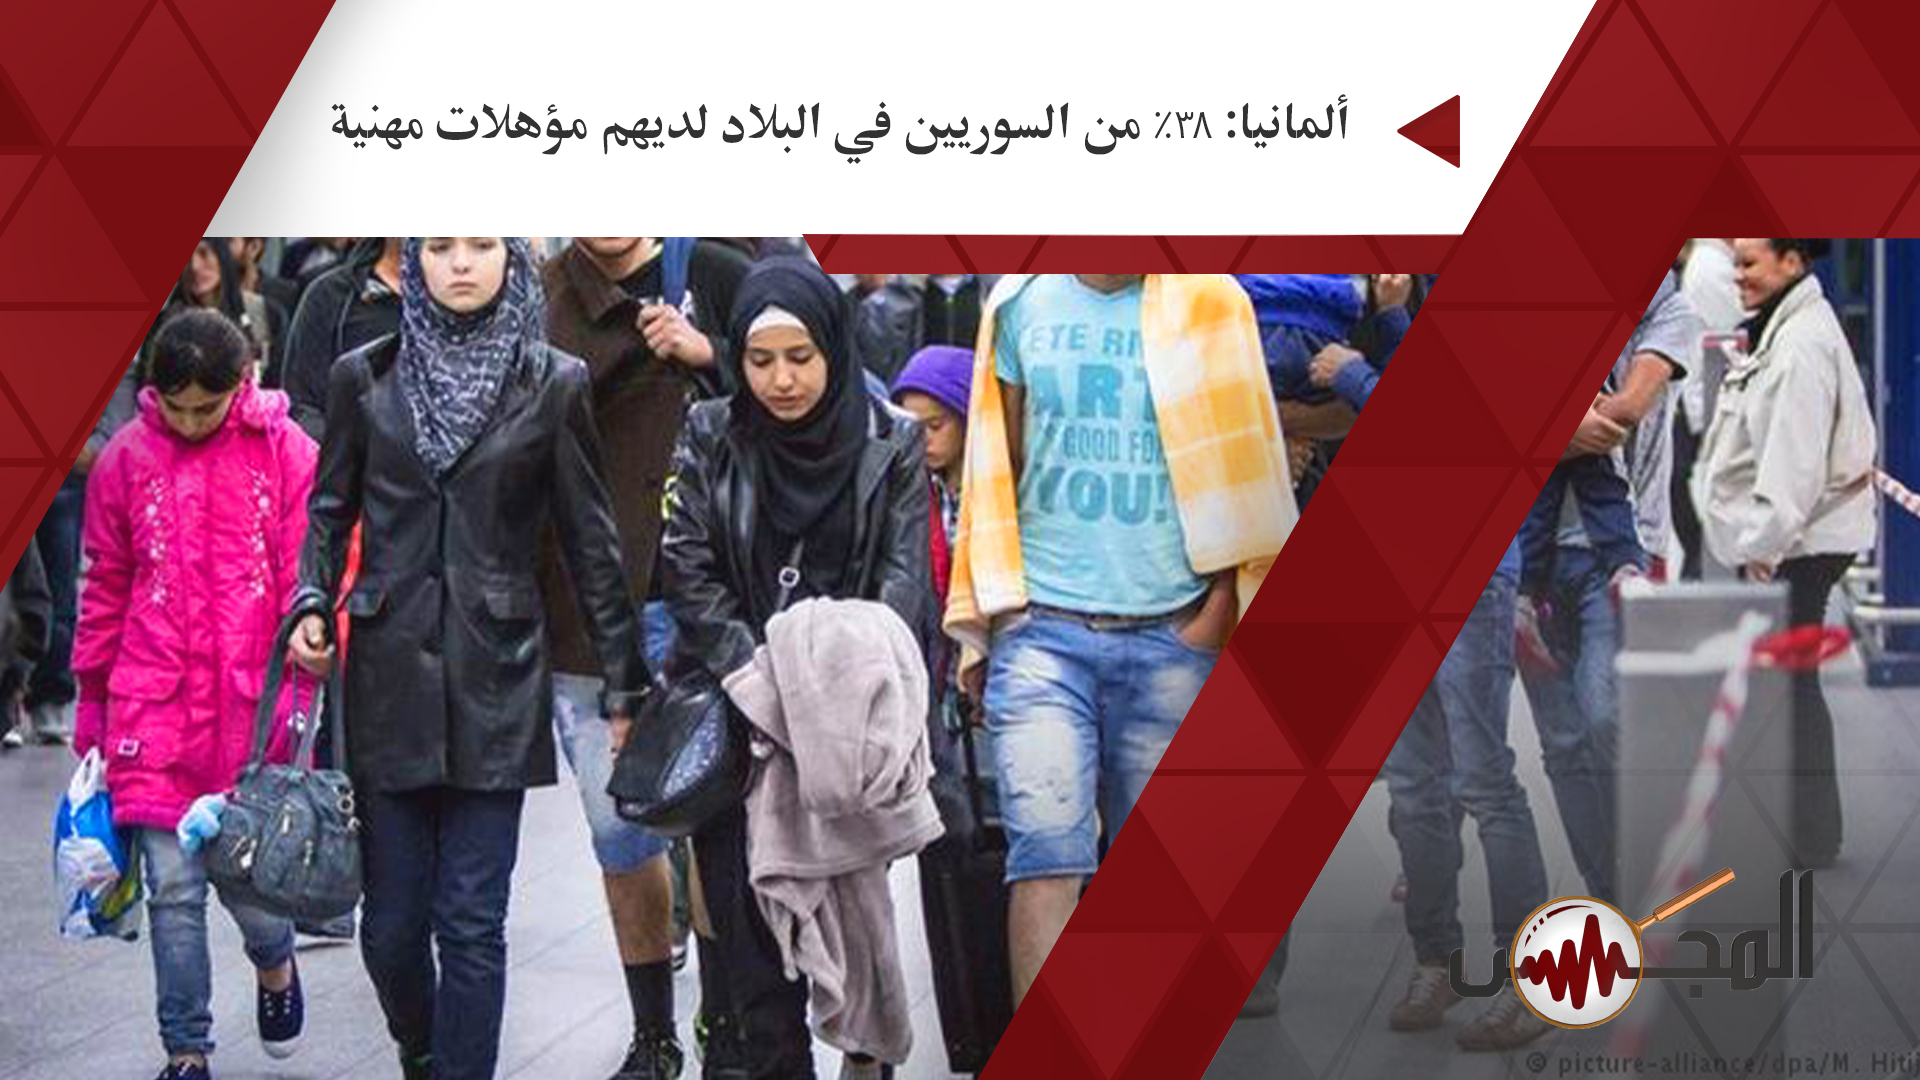 ألمانيا: 38% من السوريين في البلاد لديهم مؤهلات مهنية